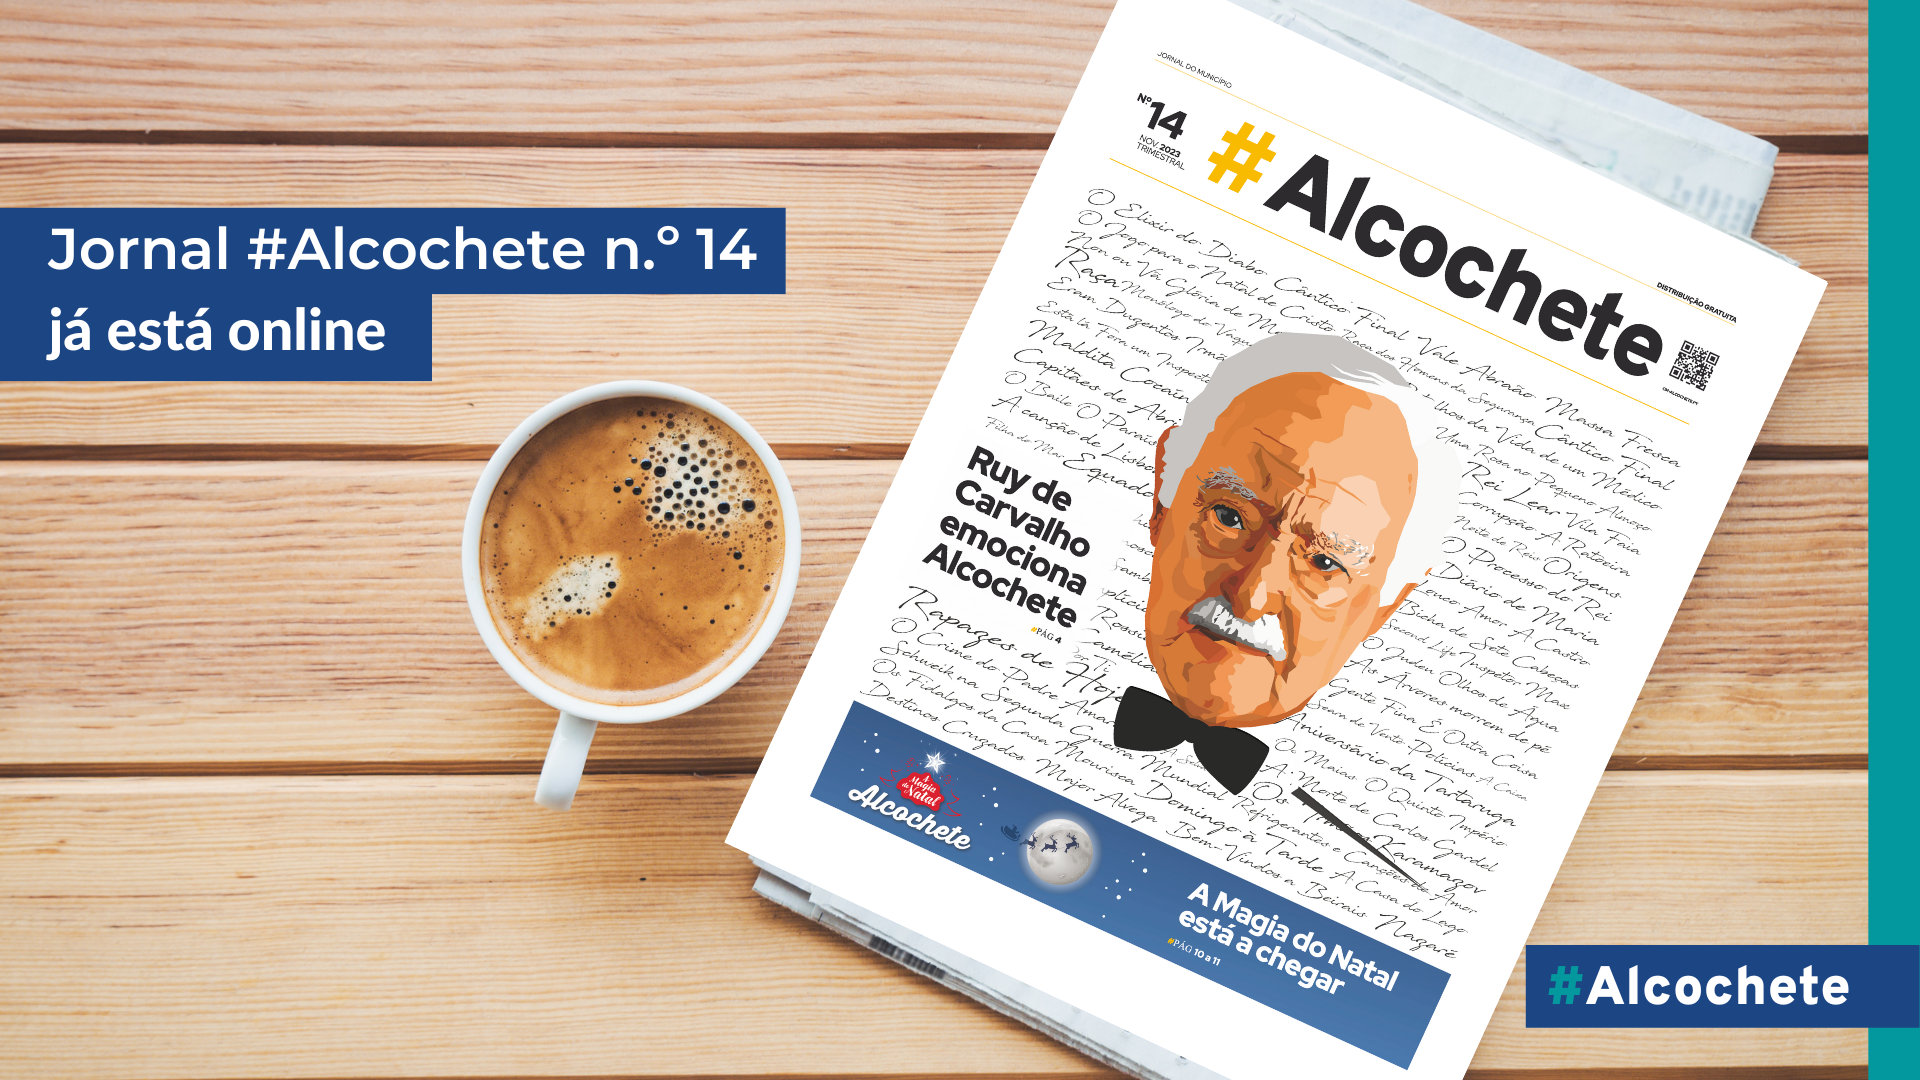 Jornal #Alcochete já está online